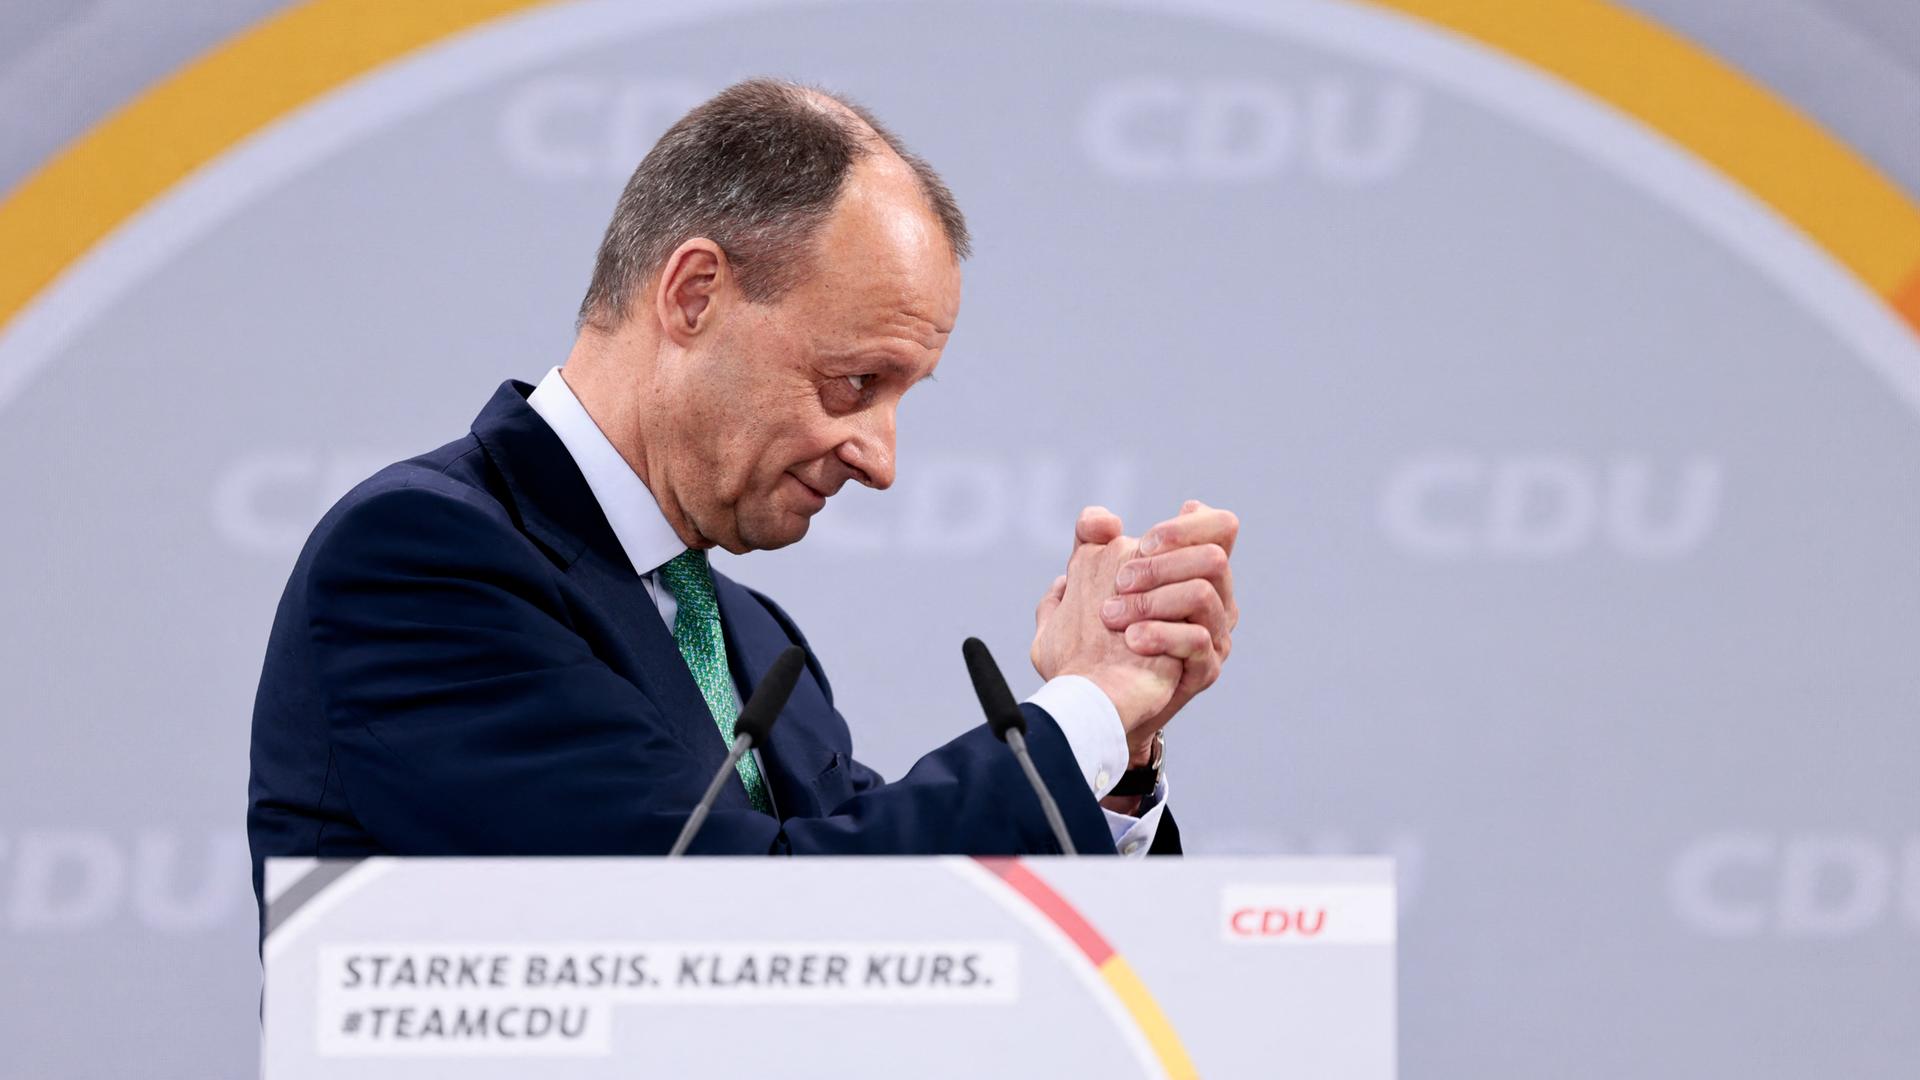 Der neue CDU-Vorsitzende Friedrich Merz am Rednerpult.